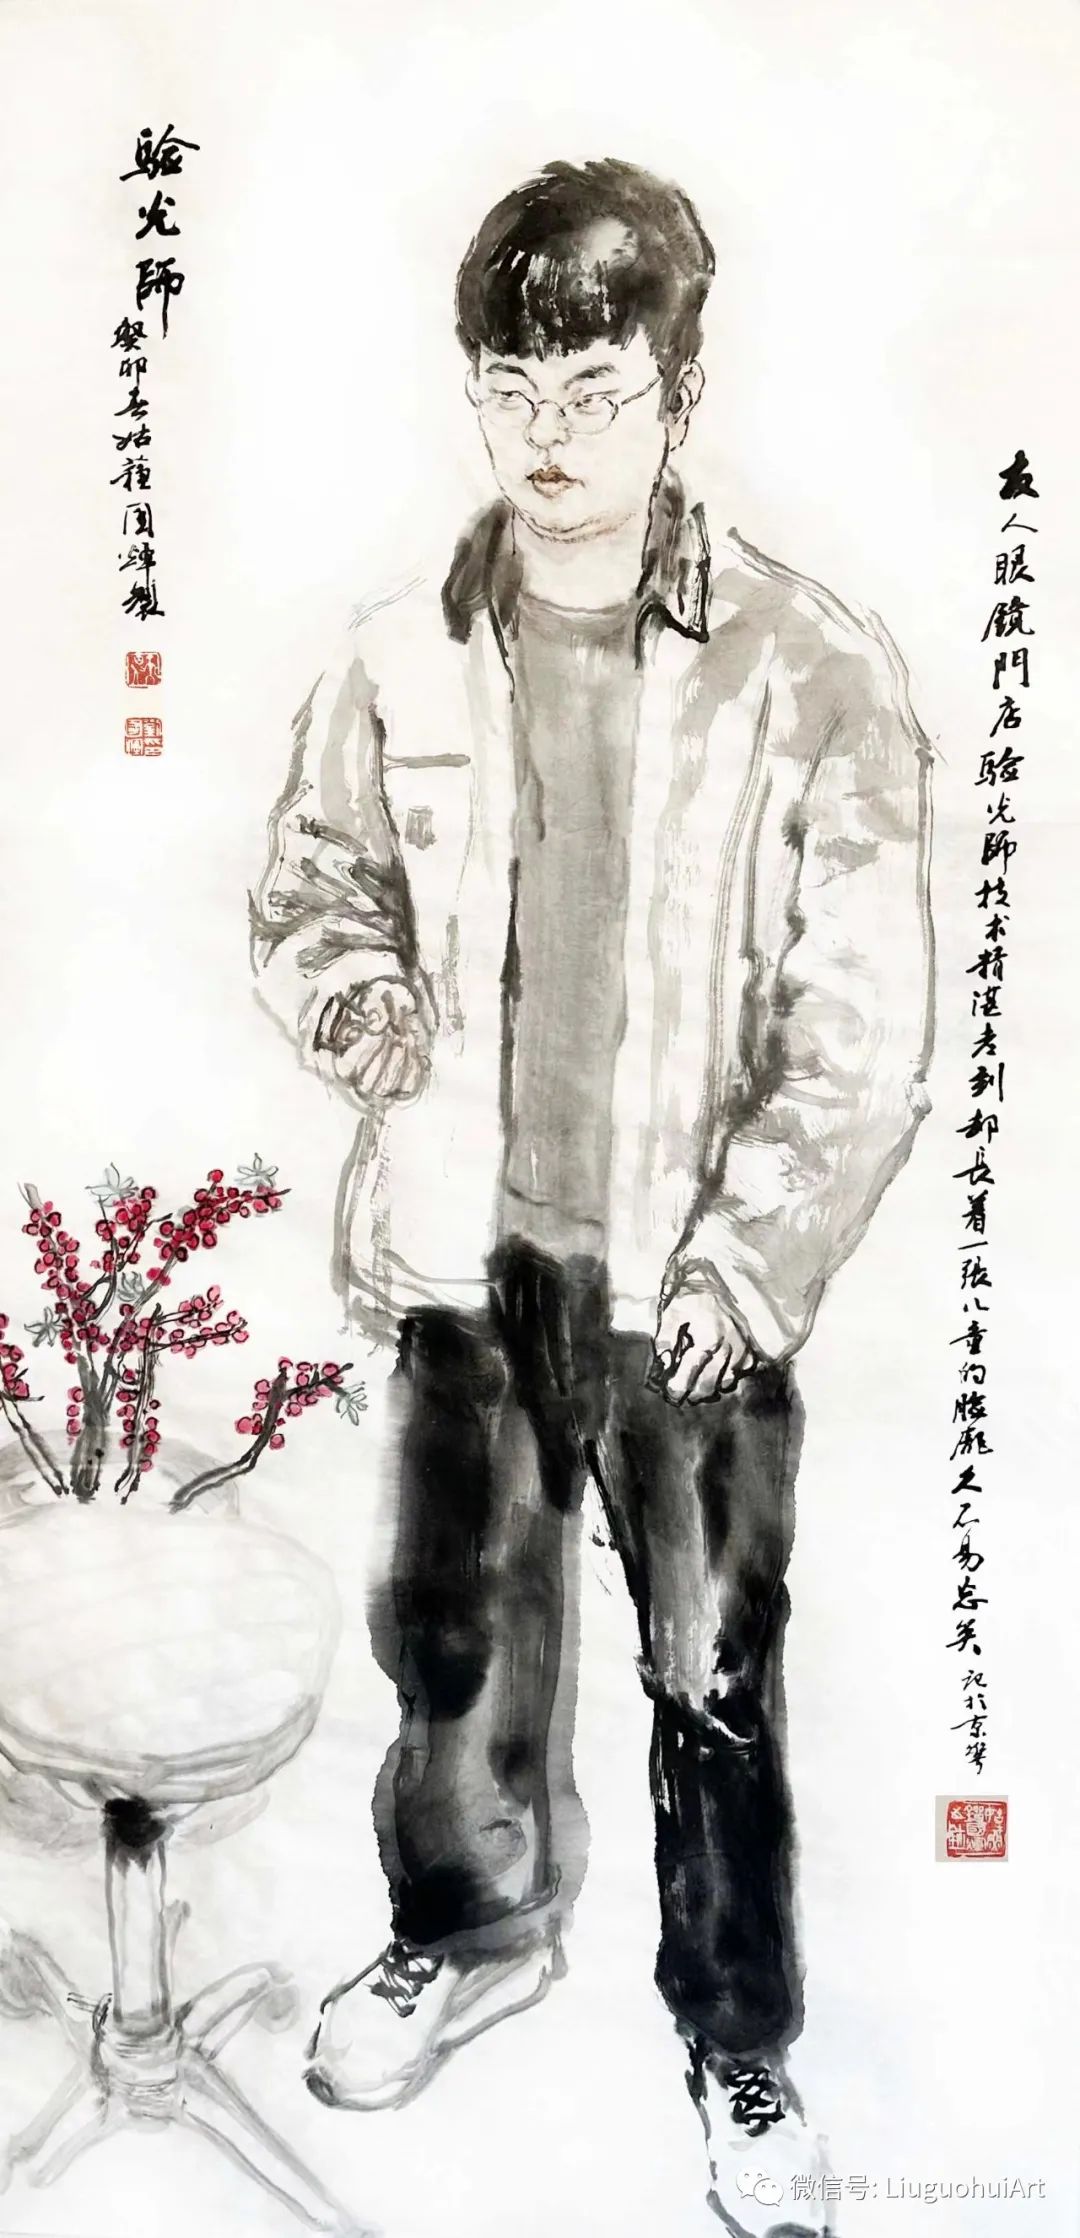 著名画家刘国辉点滴记录“苦乐人生”